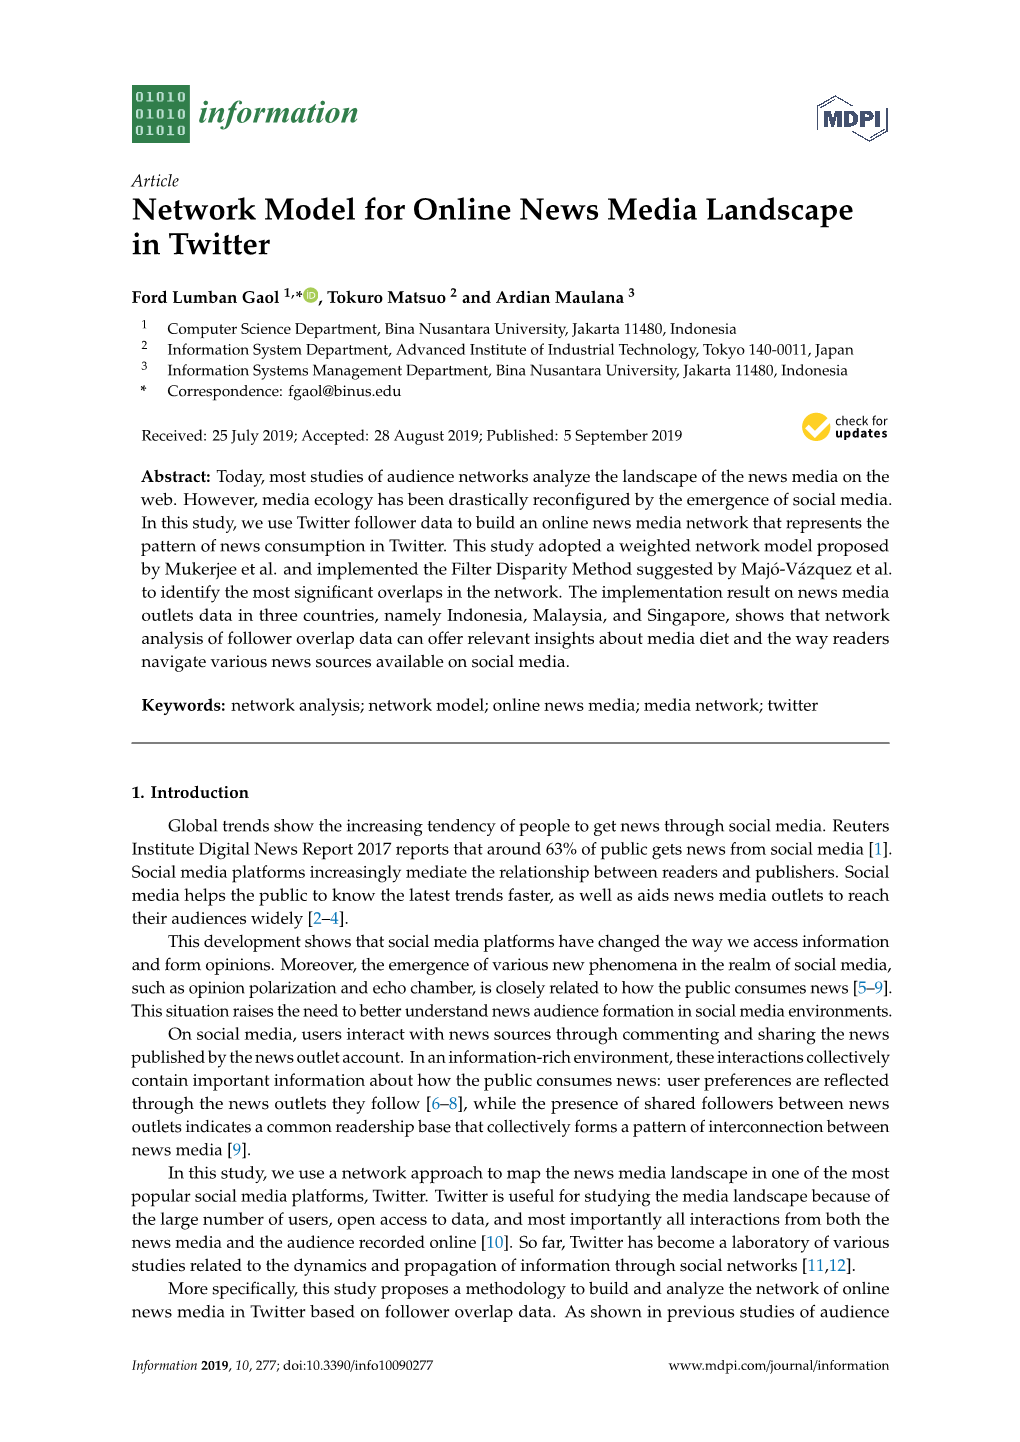 Network Model for Online News Media Landscape in Twitter